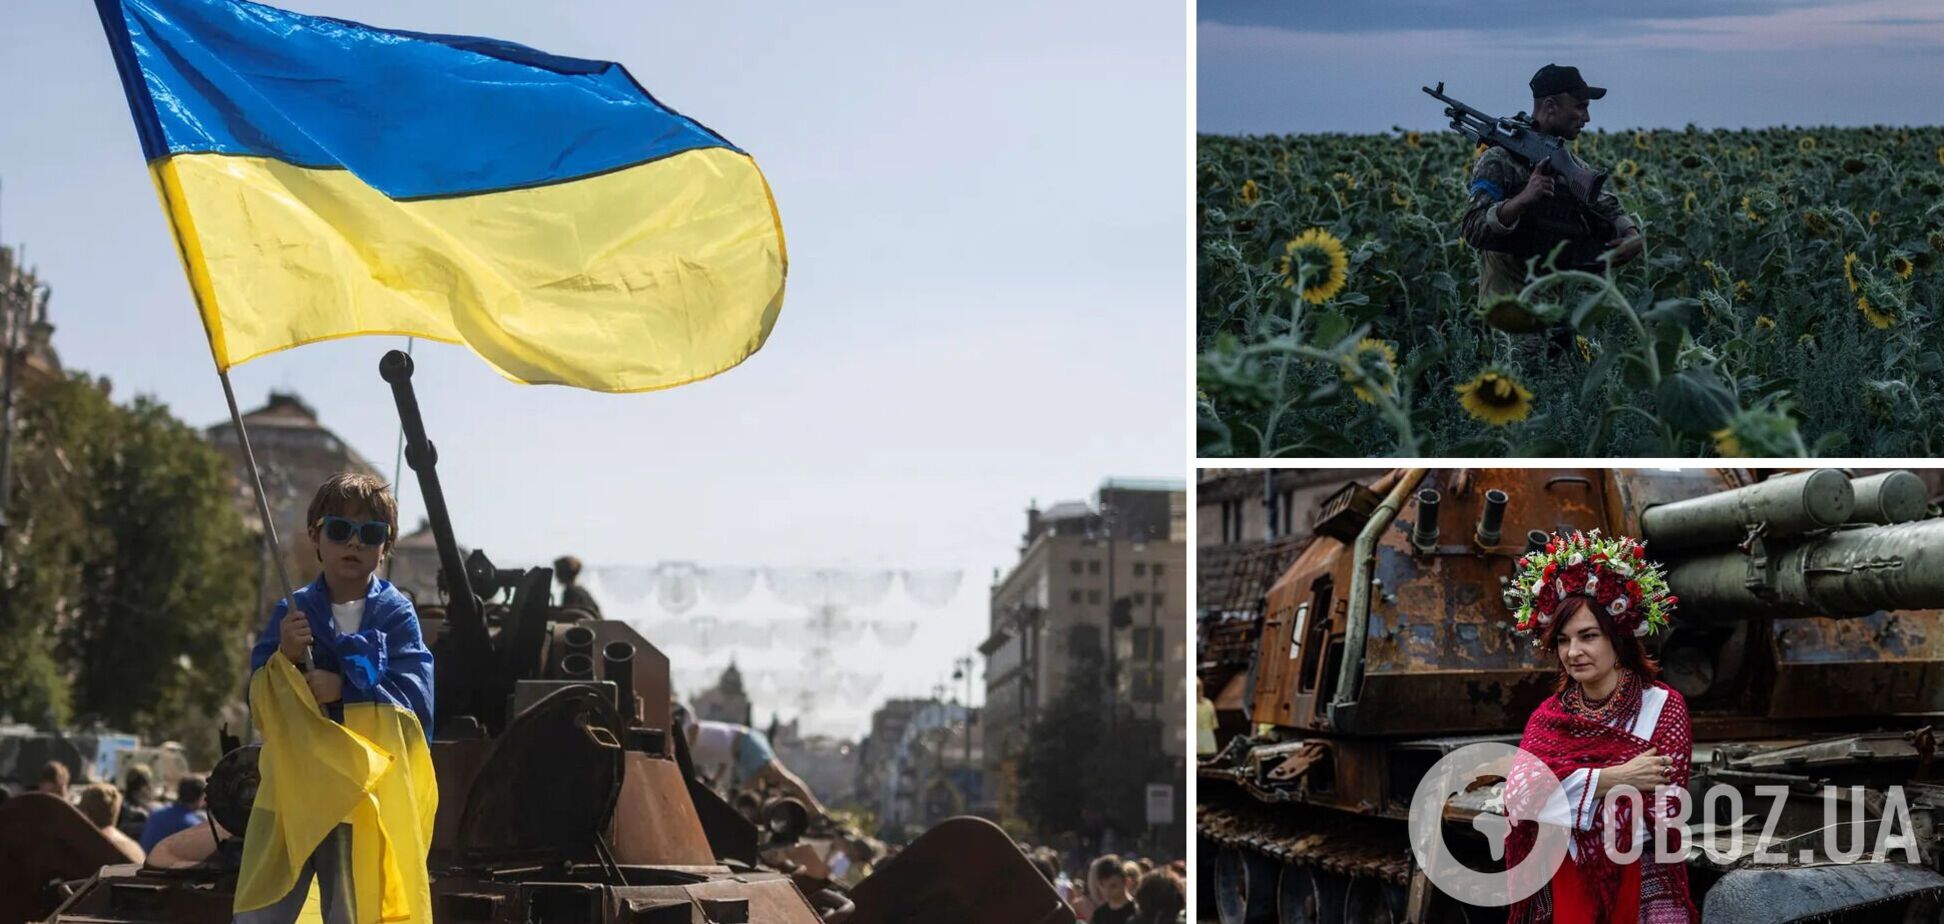 Україна святкує День Незалежності в умовах війни під звуки повітряних тривог. Головне 